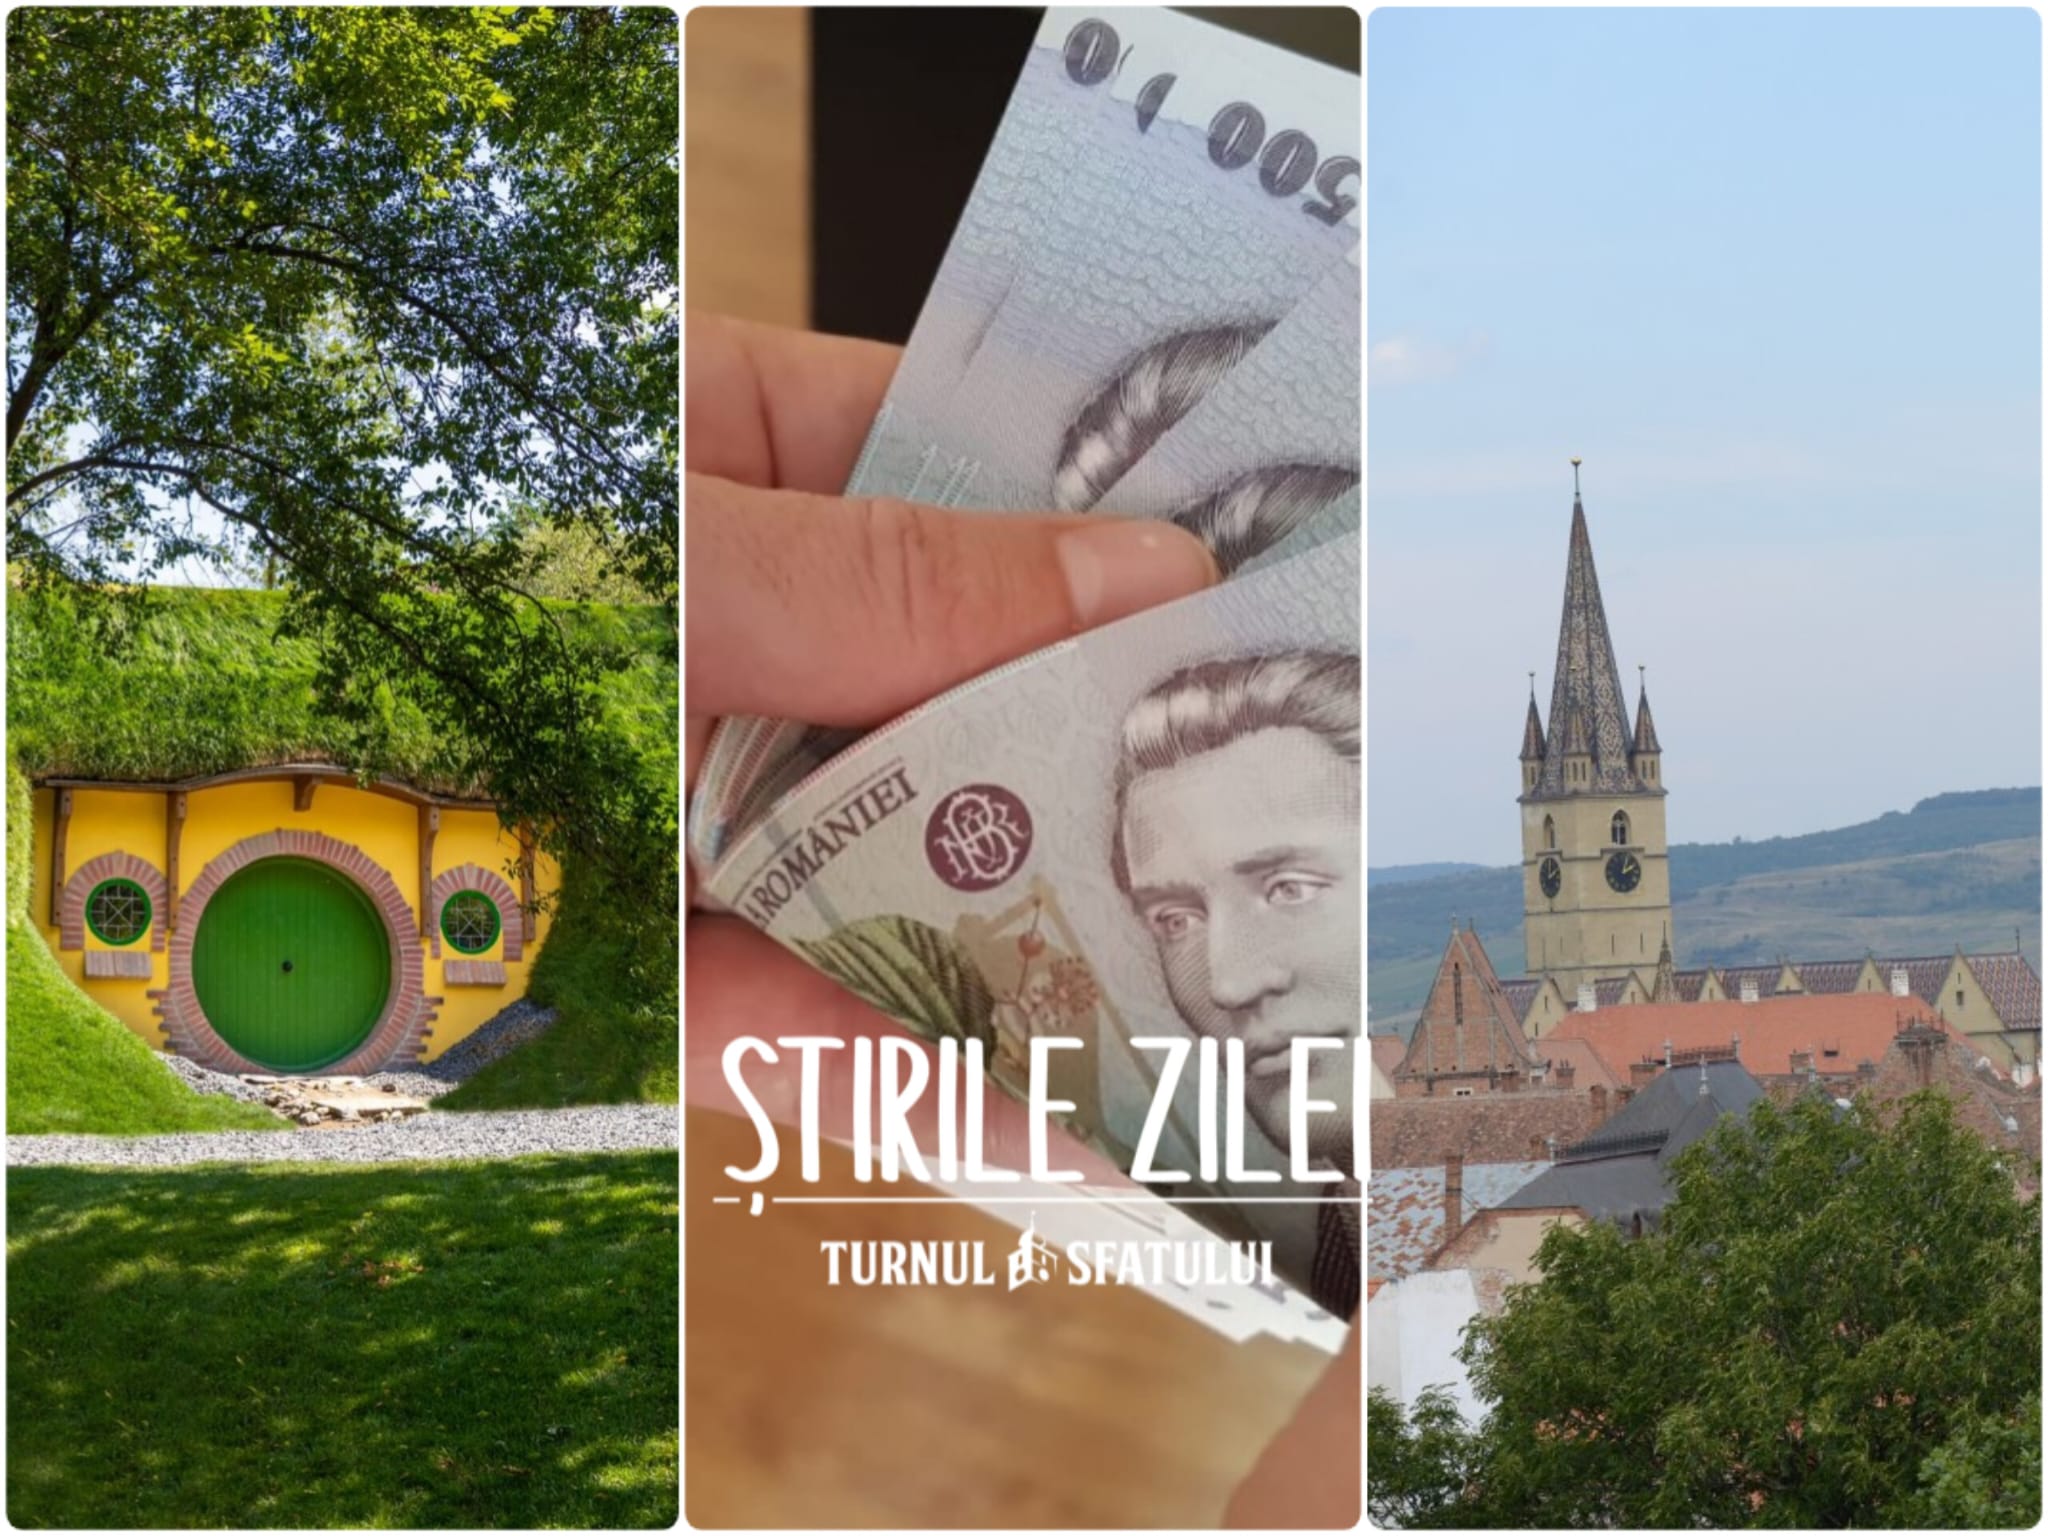 Știrile zilei - 31 august: Se deschide noul obiectiv turistic * Ziua Sibiului * Cât câștigă sibienii